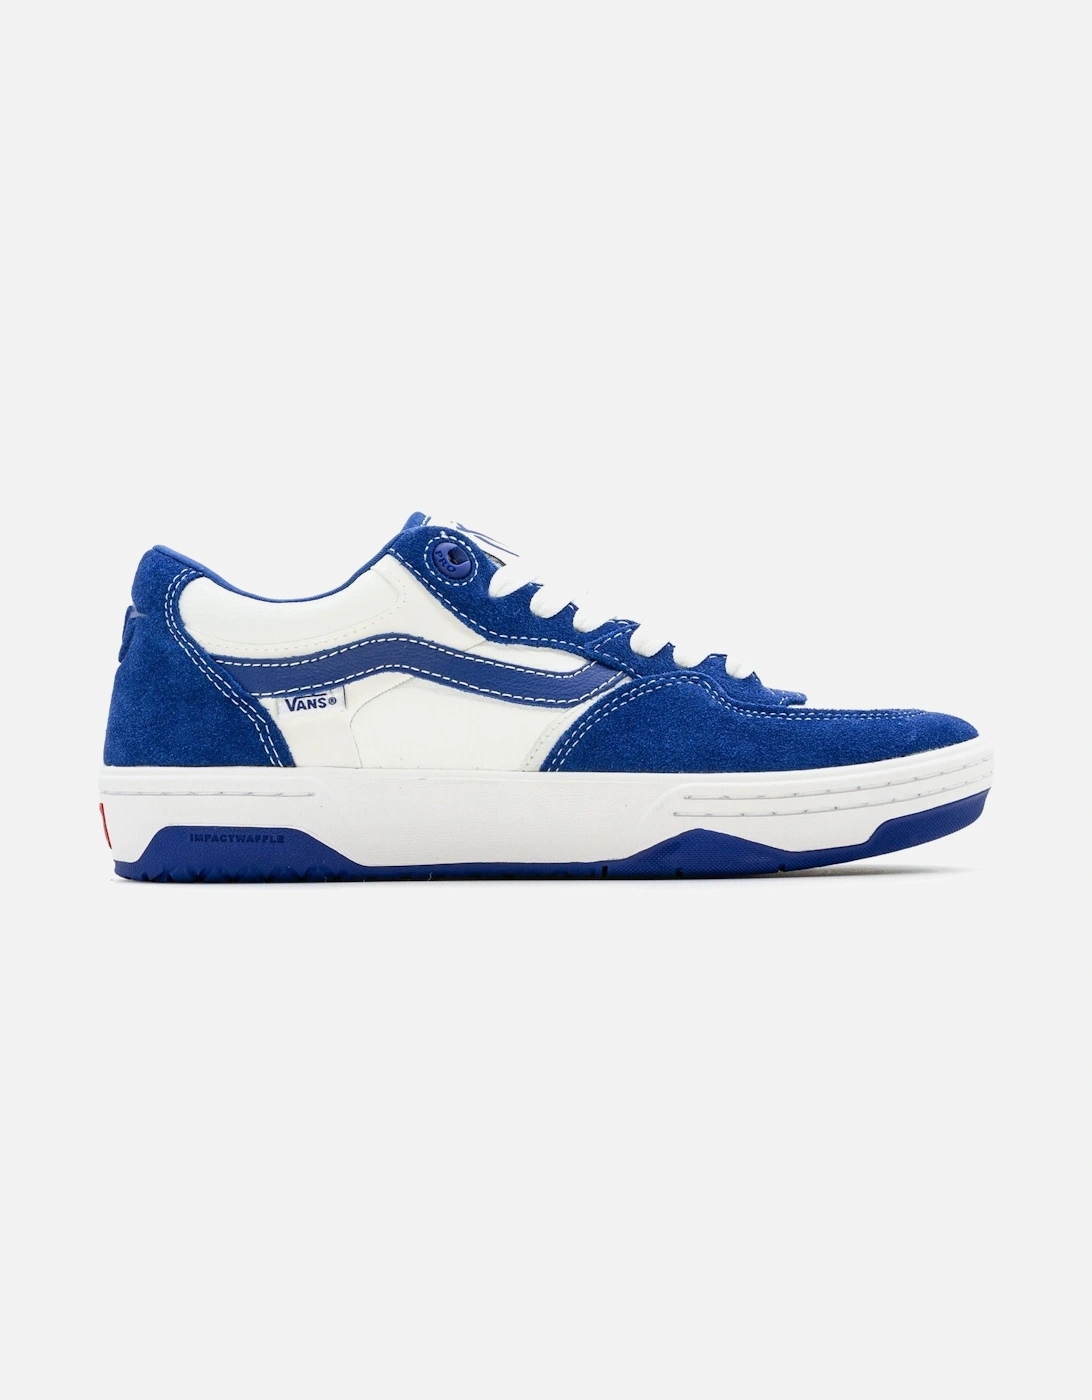 Rowan II Shoes - True Blue/White